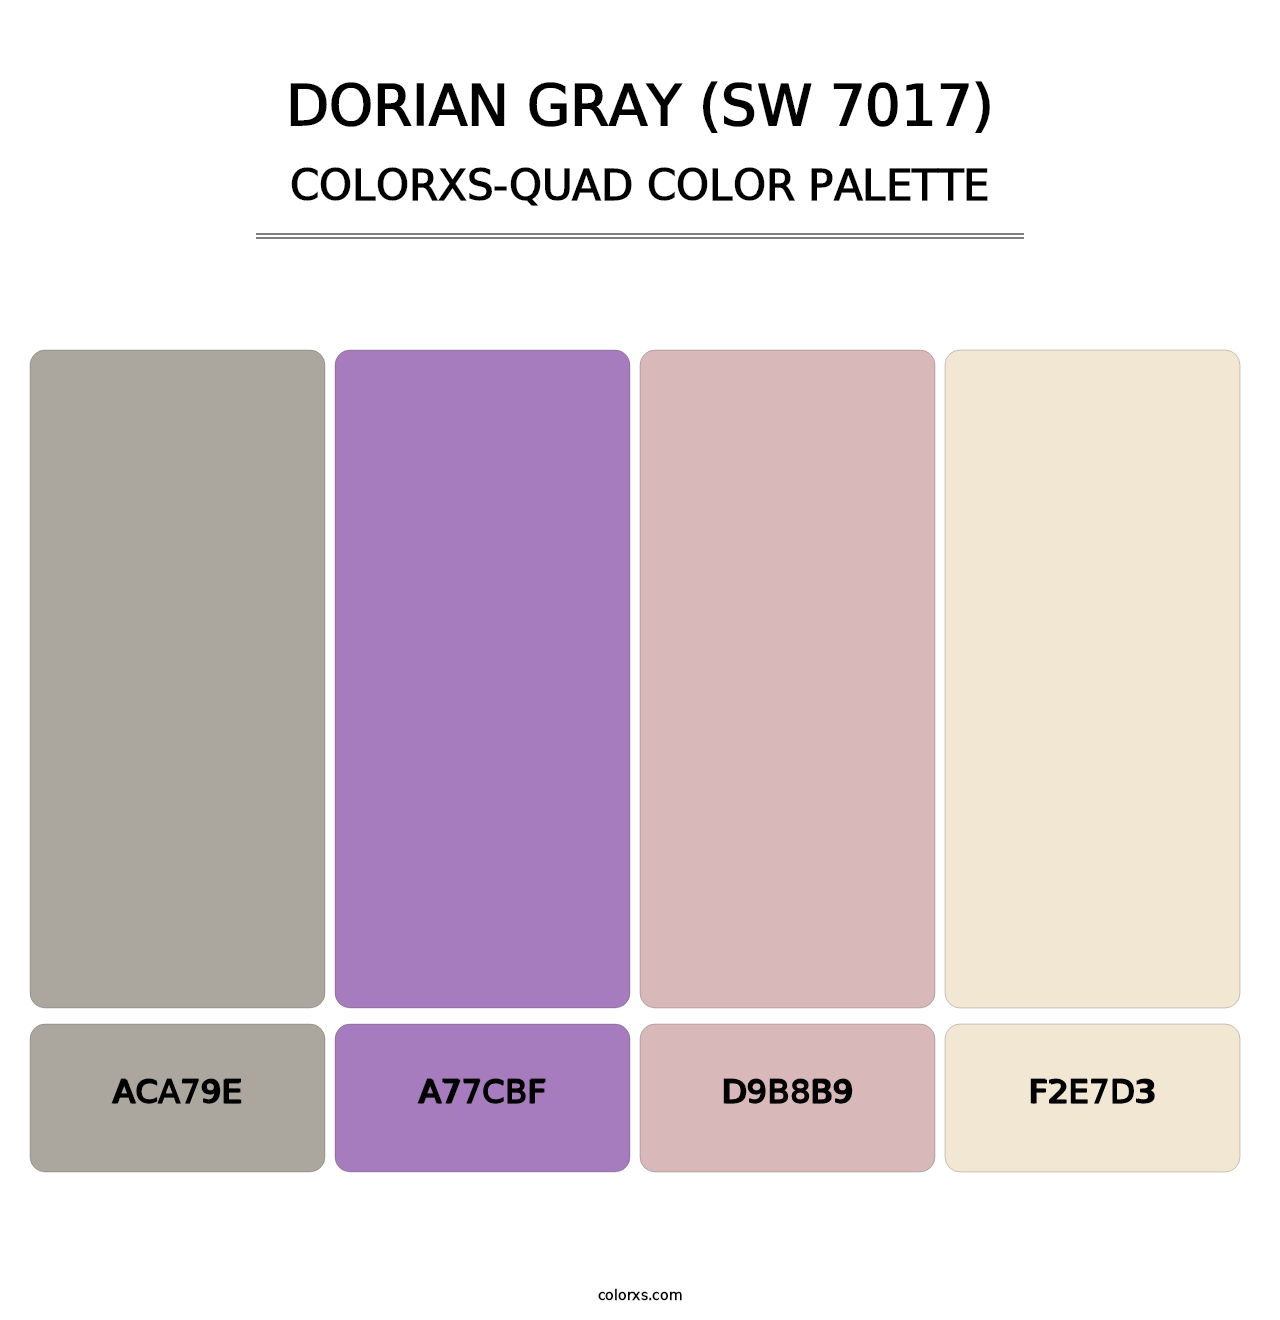 Dorian Gray (SW 7017) - Colorxs Quad Palette